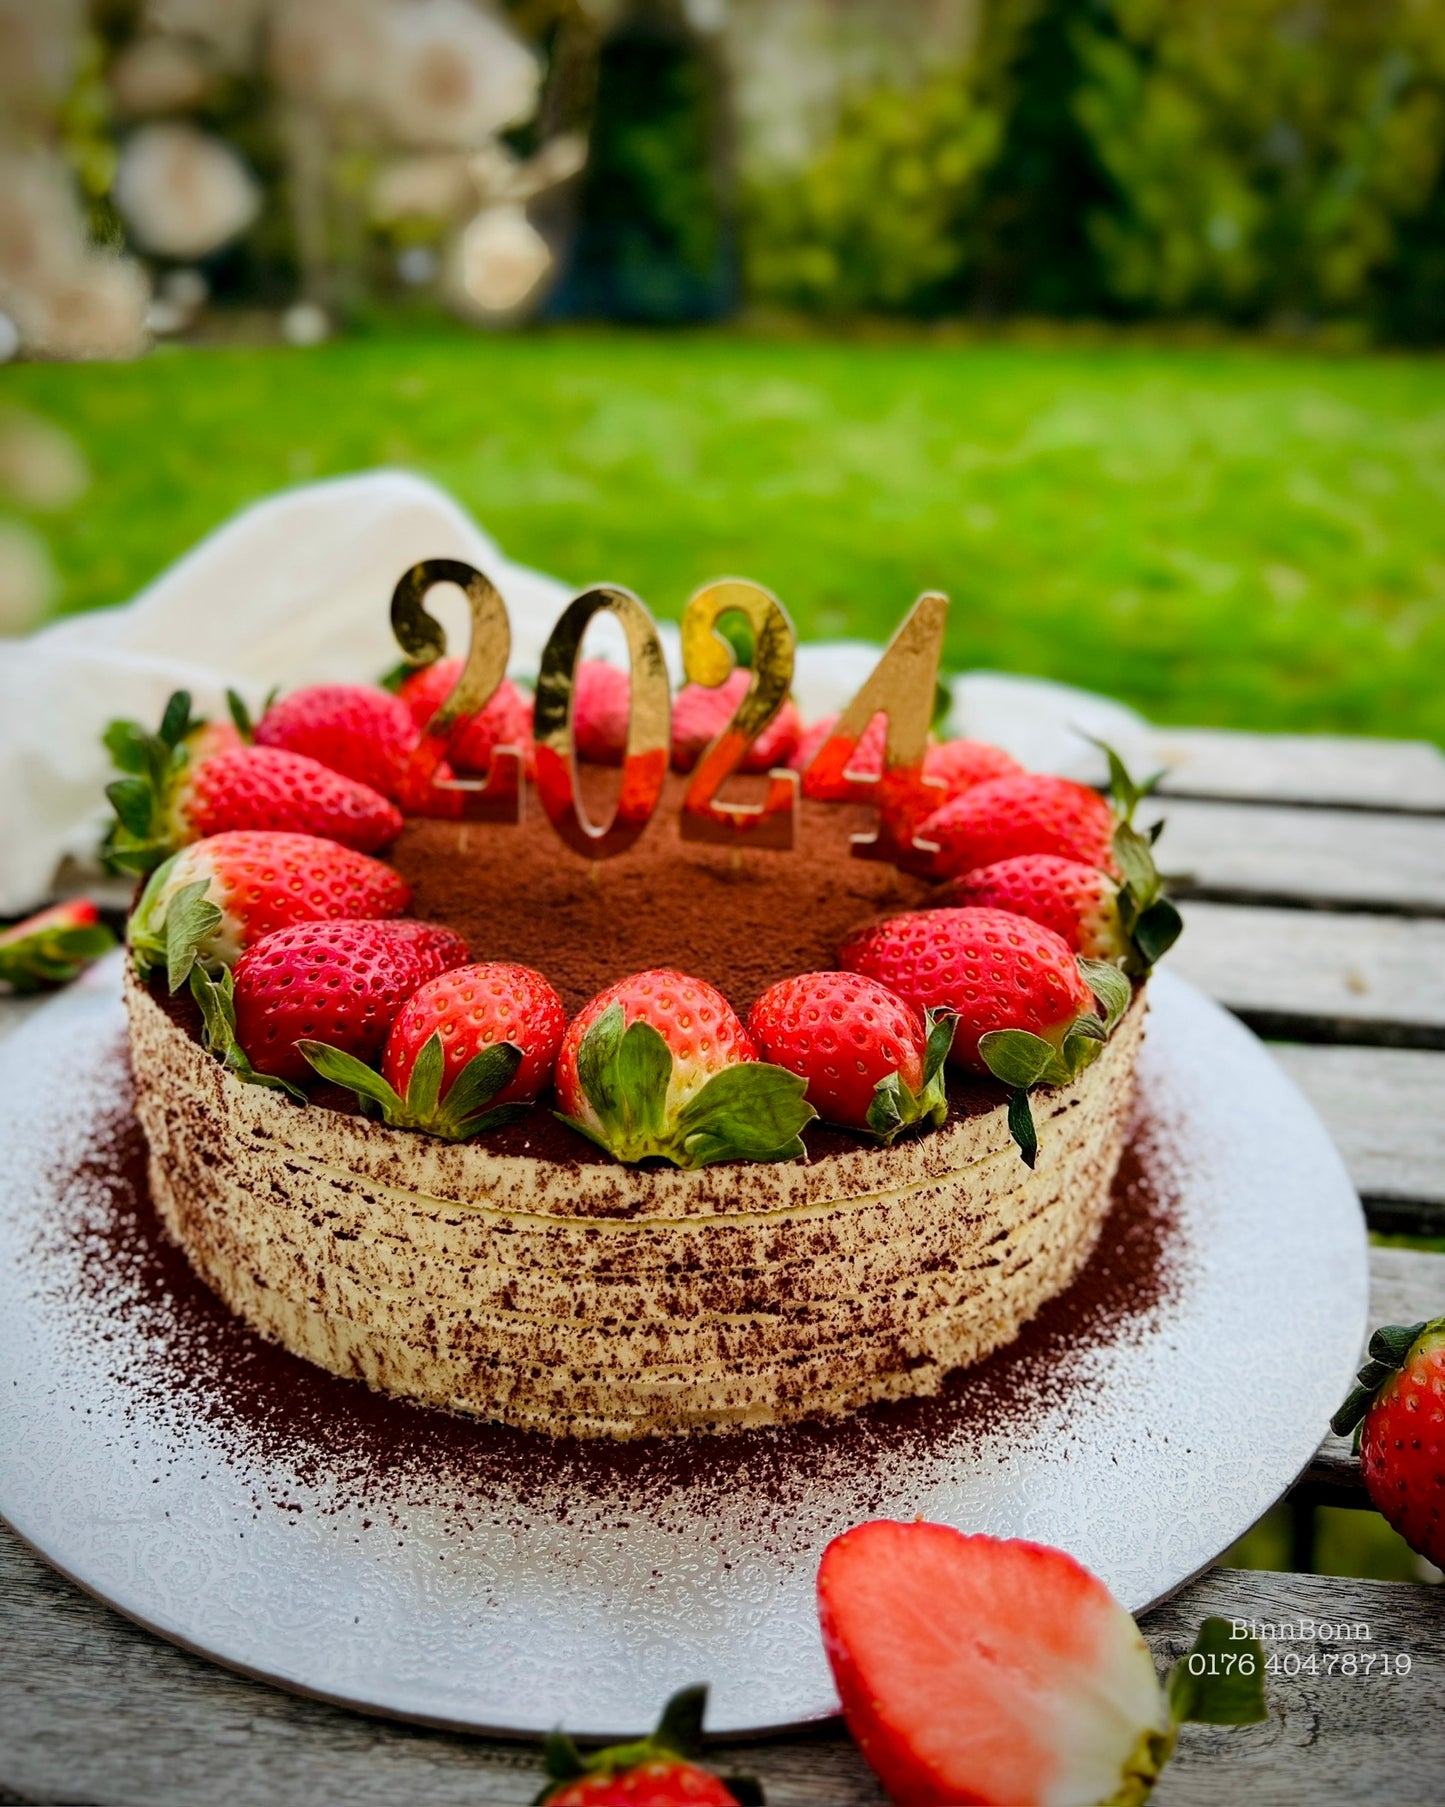 36. Torte "Infinite Love" Tiramisu mit feinster Mascapone Creme und frischen Erdbeeren